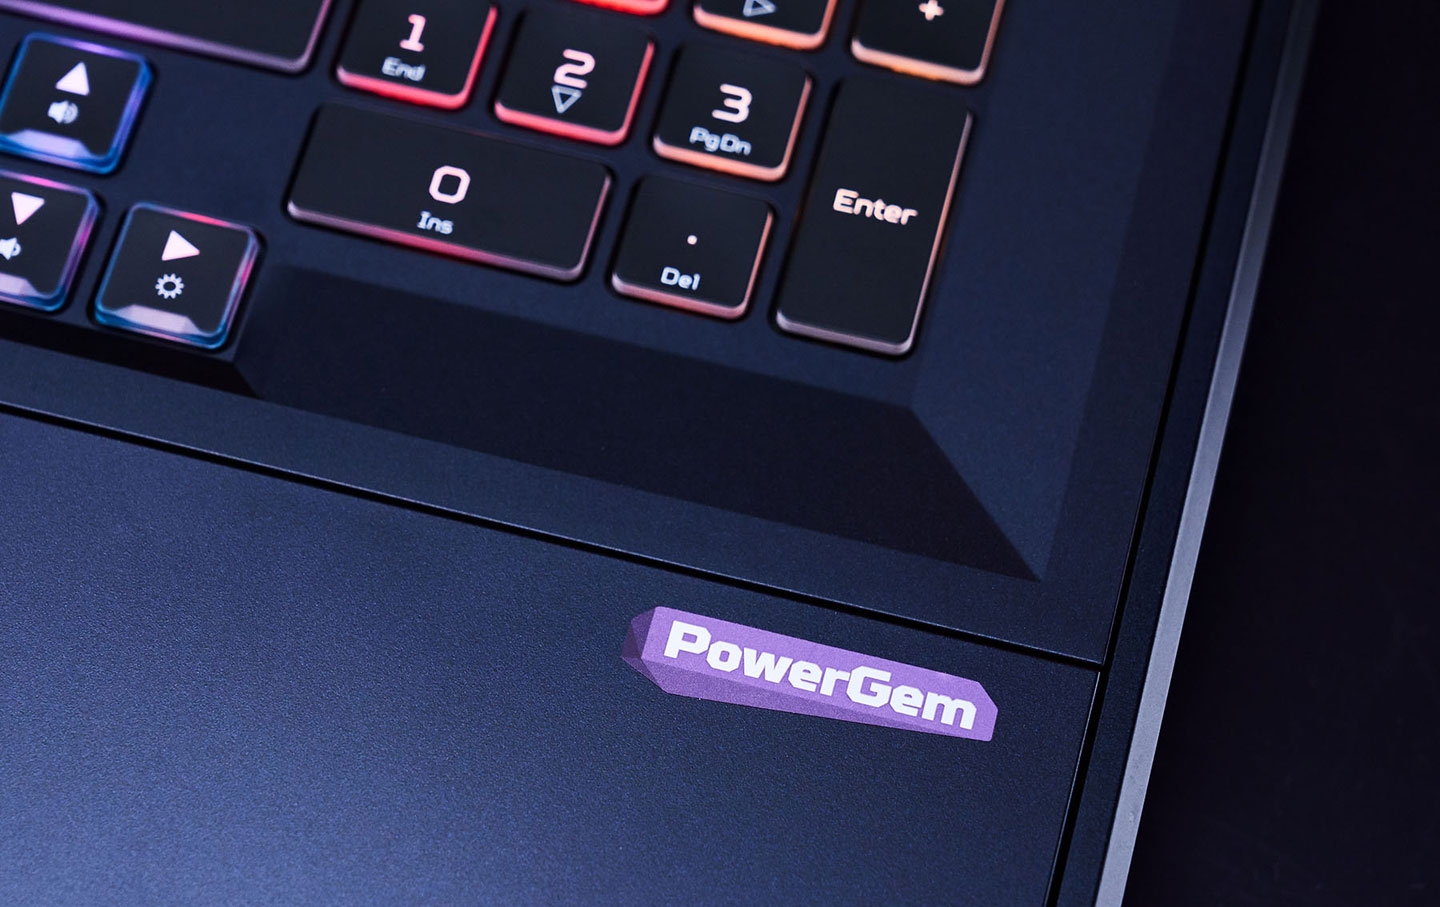 鍵盤右下角可看到 PowerGem 的字樣，這個技術也是 Predator Helios 700 散熱強化的軟體優化功能。